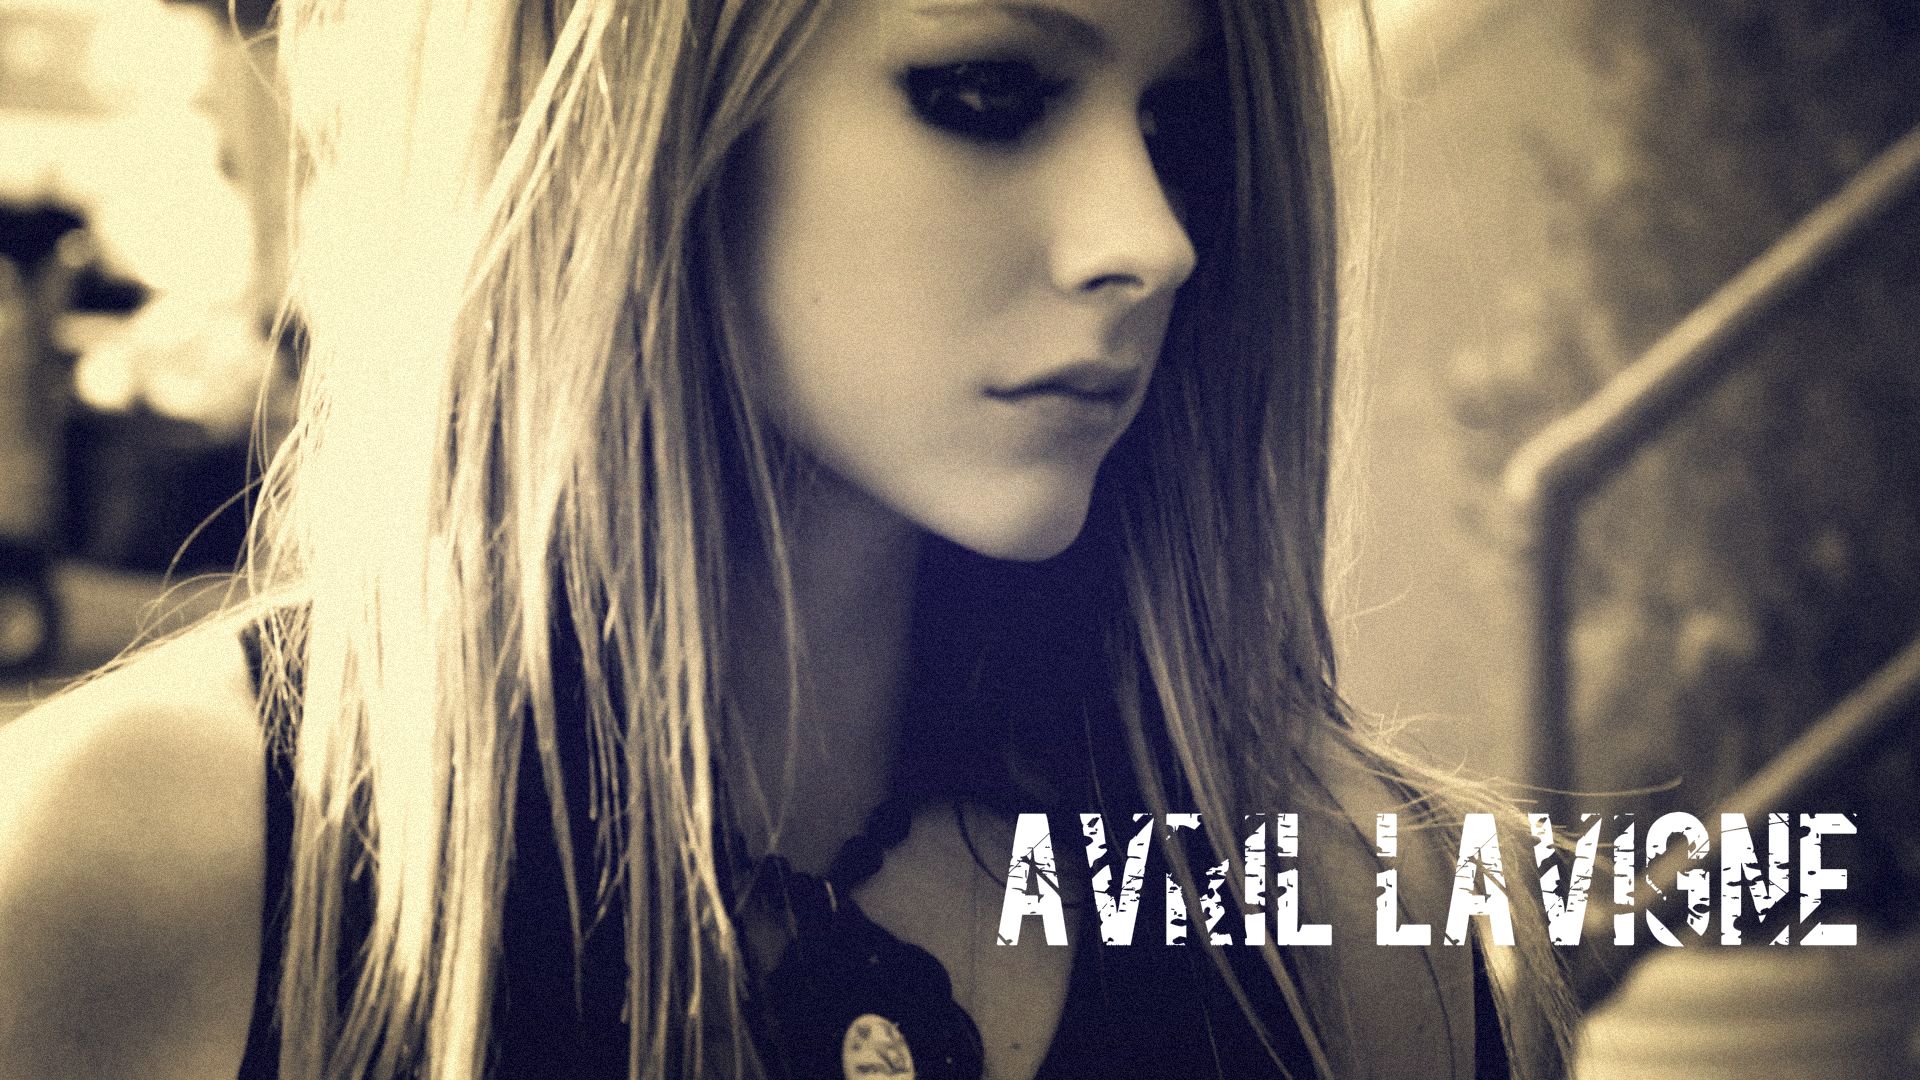 Avril Lavigne Wallpaper. Avril Lavigne Wallpaper, Avril Lavigne Bad Girl Wallpaper and Rock'n Roll Avril Lavigne Wallpaper